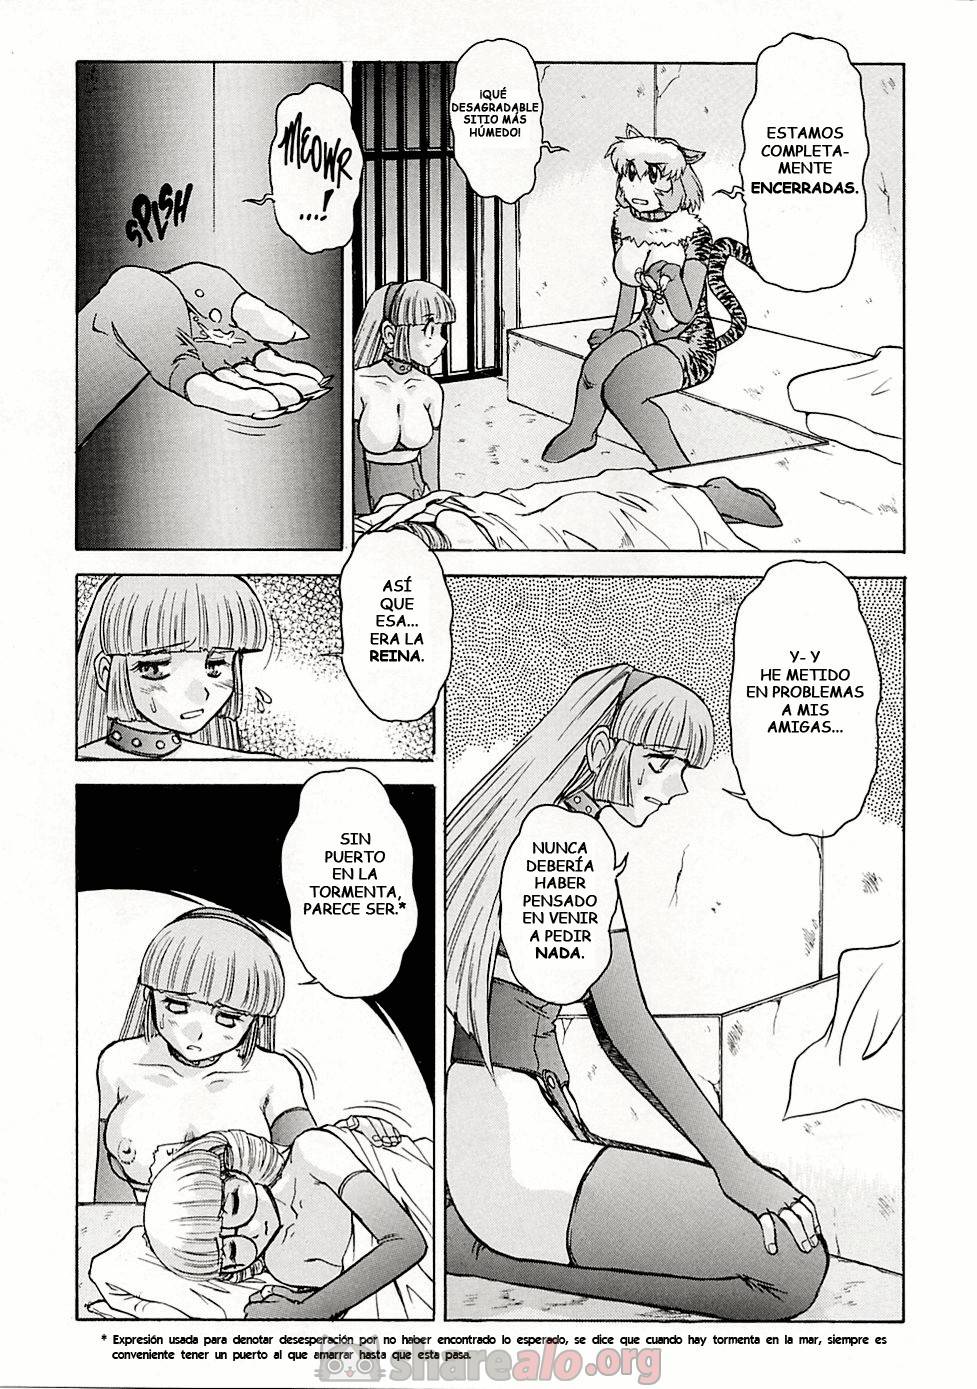 Alice Extreme (Parte #7 y #8) - 3 - Comics Porno - Hentai Manga - Cartoon XXX